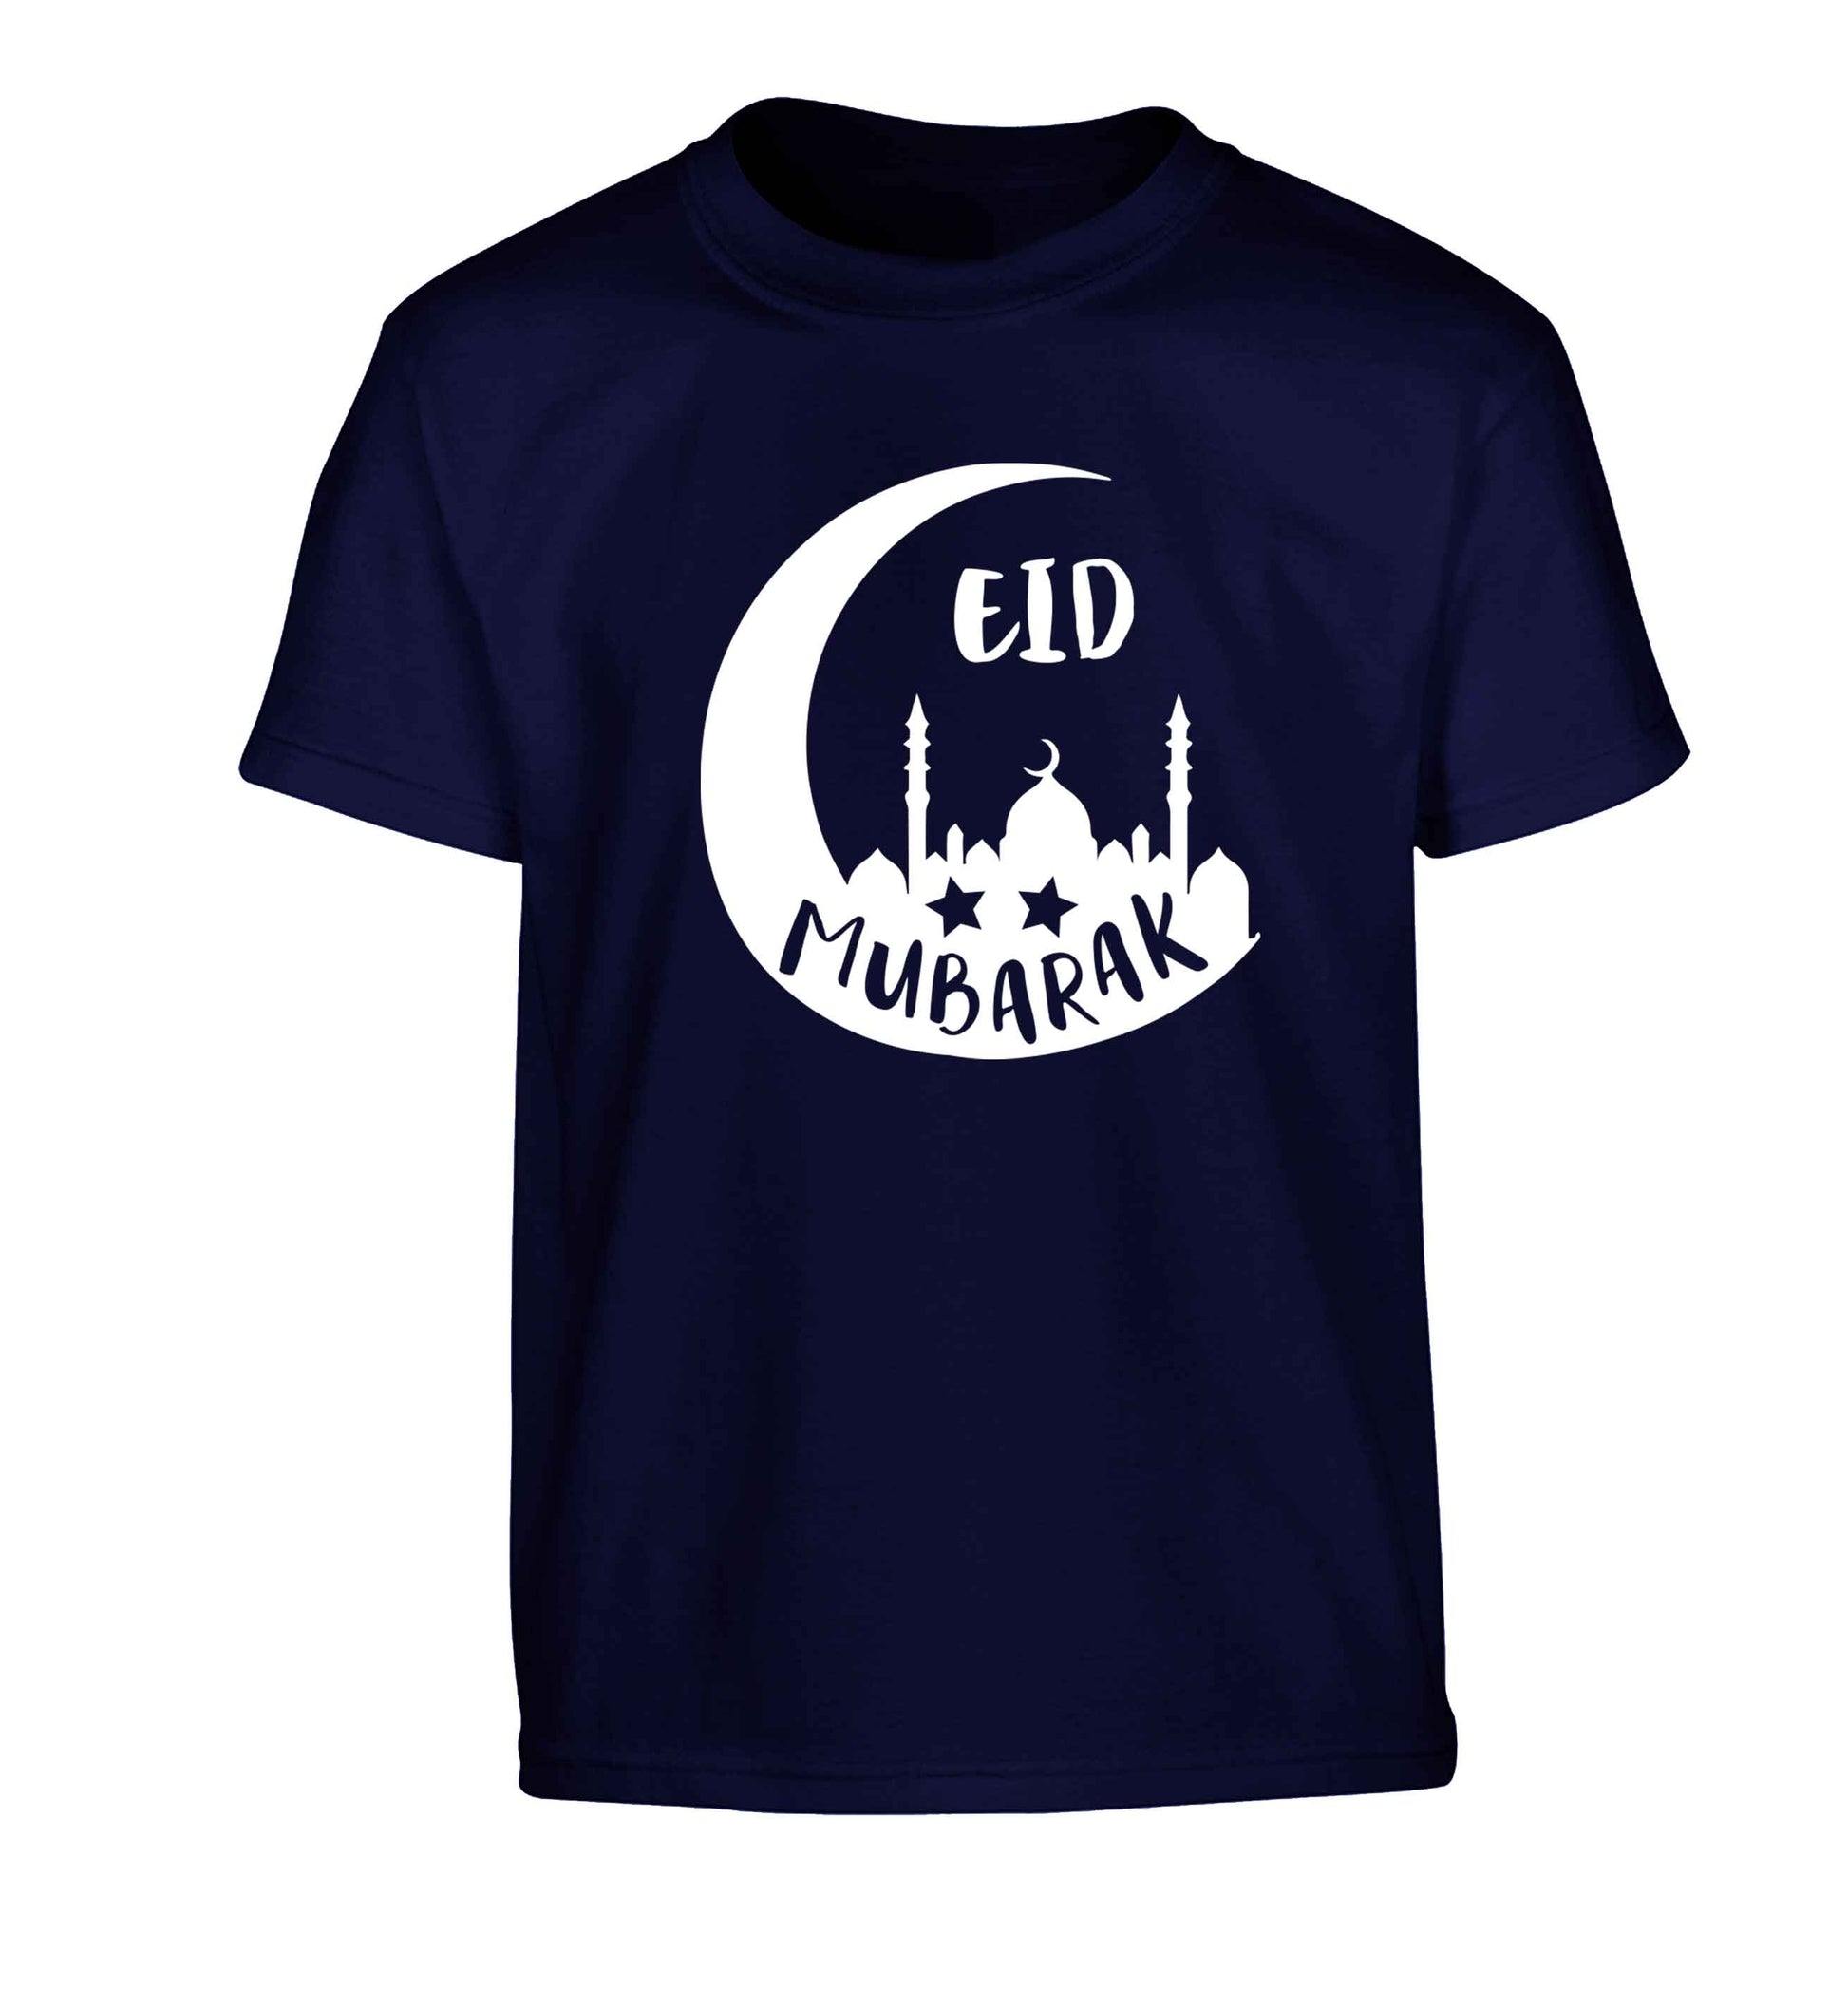 Eid mubarak Children's navy Tshirt 12-13 Years